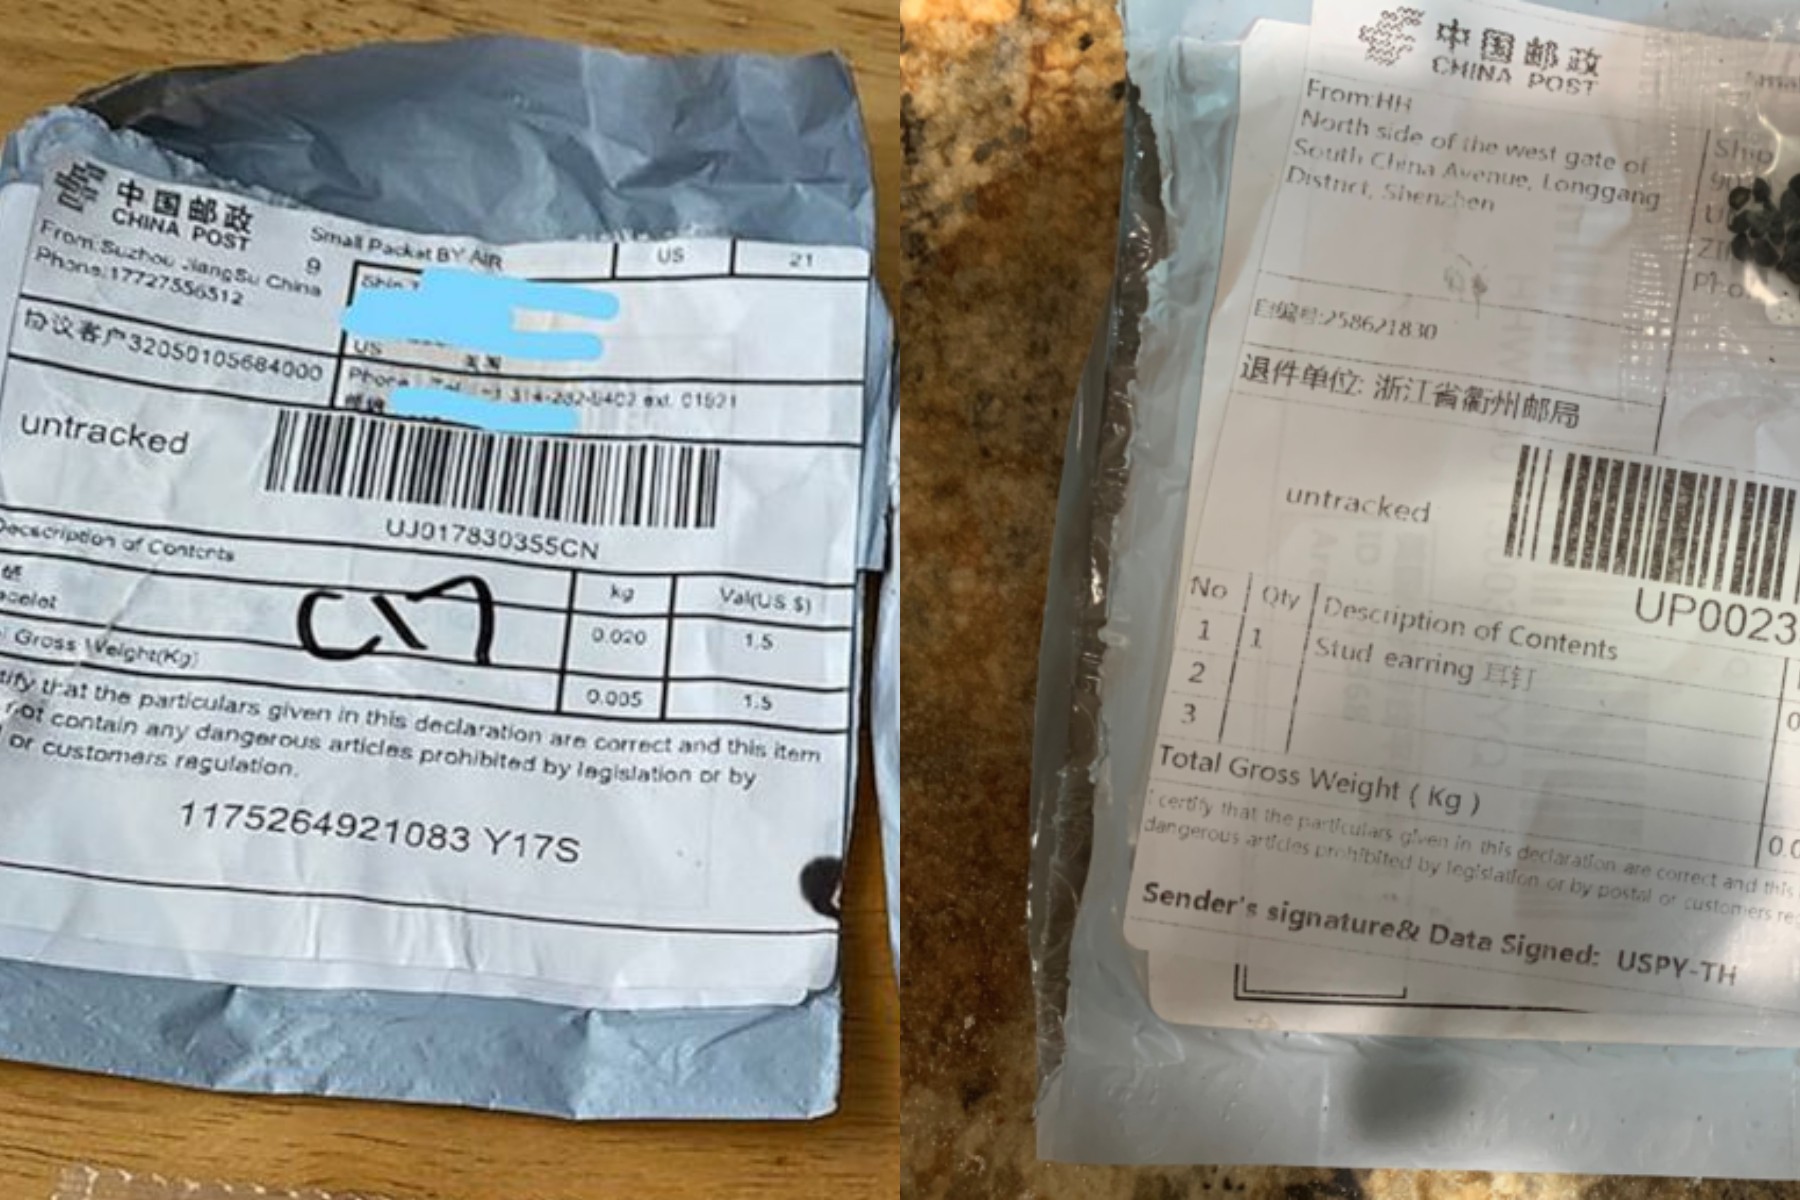 Americanii, în pericol? Zeci de pachete misterioase trimise din China le-au fost livrate acasă fără să le solicite - VIDEO